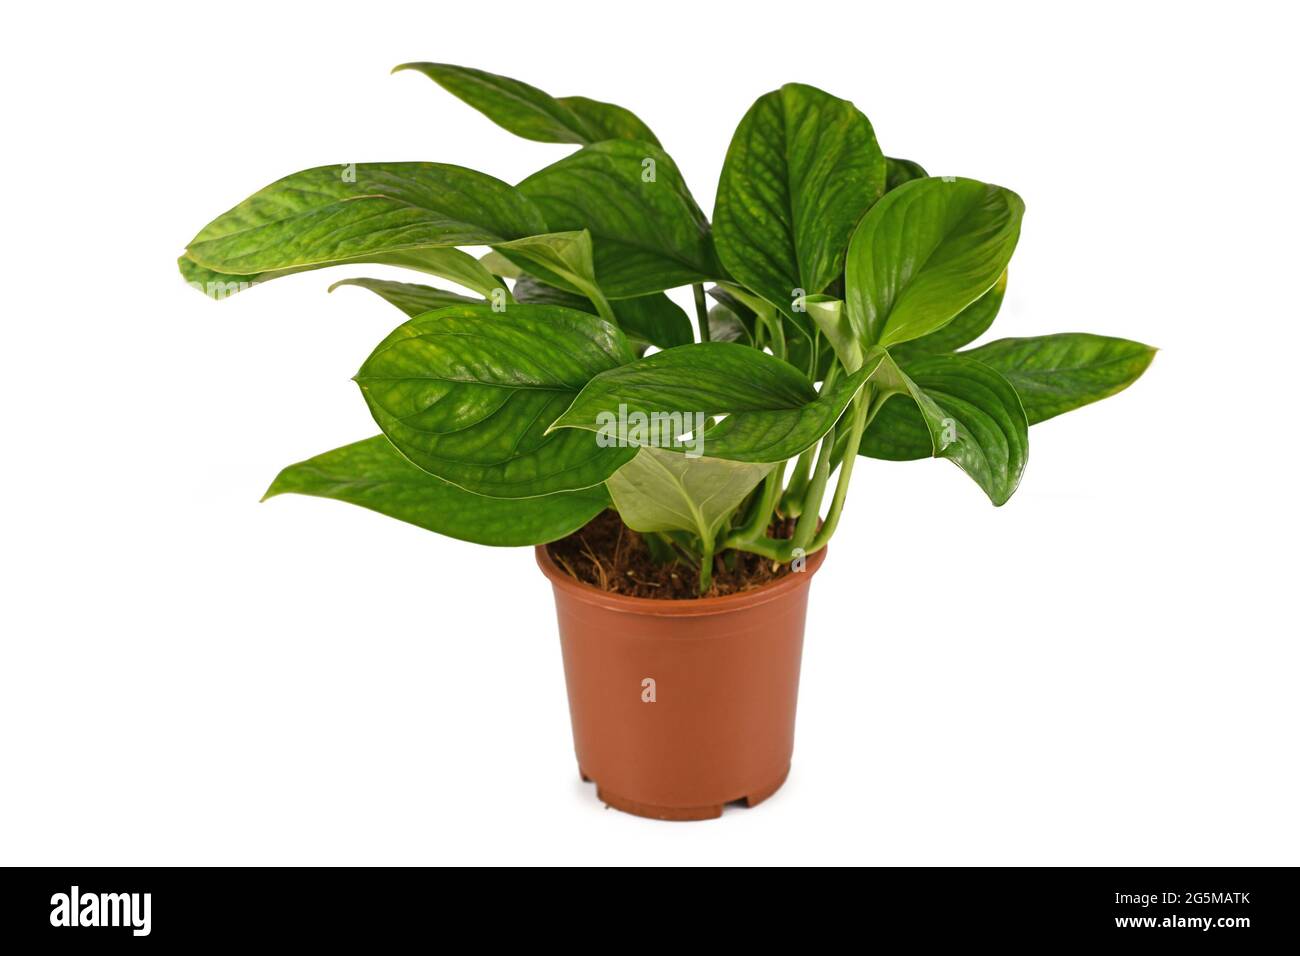 Esotica pianta domestica 'Monstera Pinnatipartita' con foglie giovani senza fenestrazione isolata su sfondo bianco Foto Stock